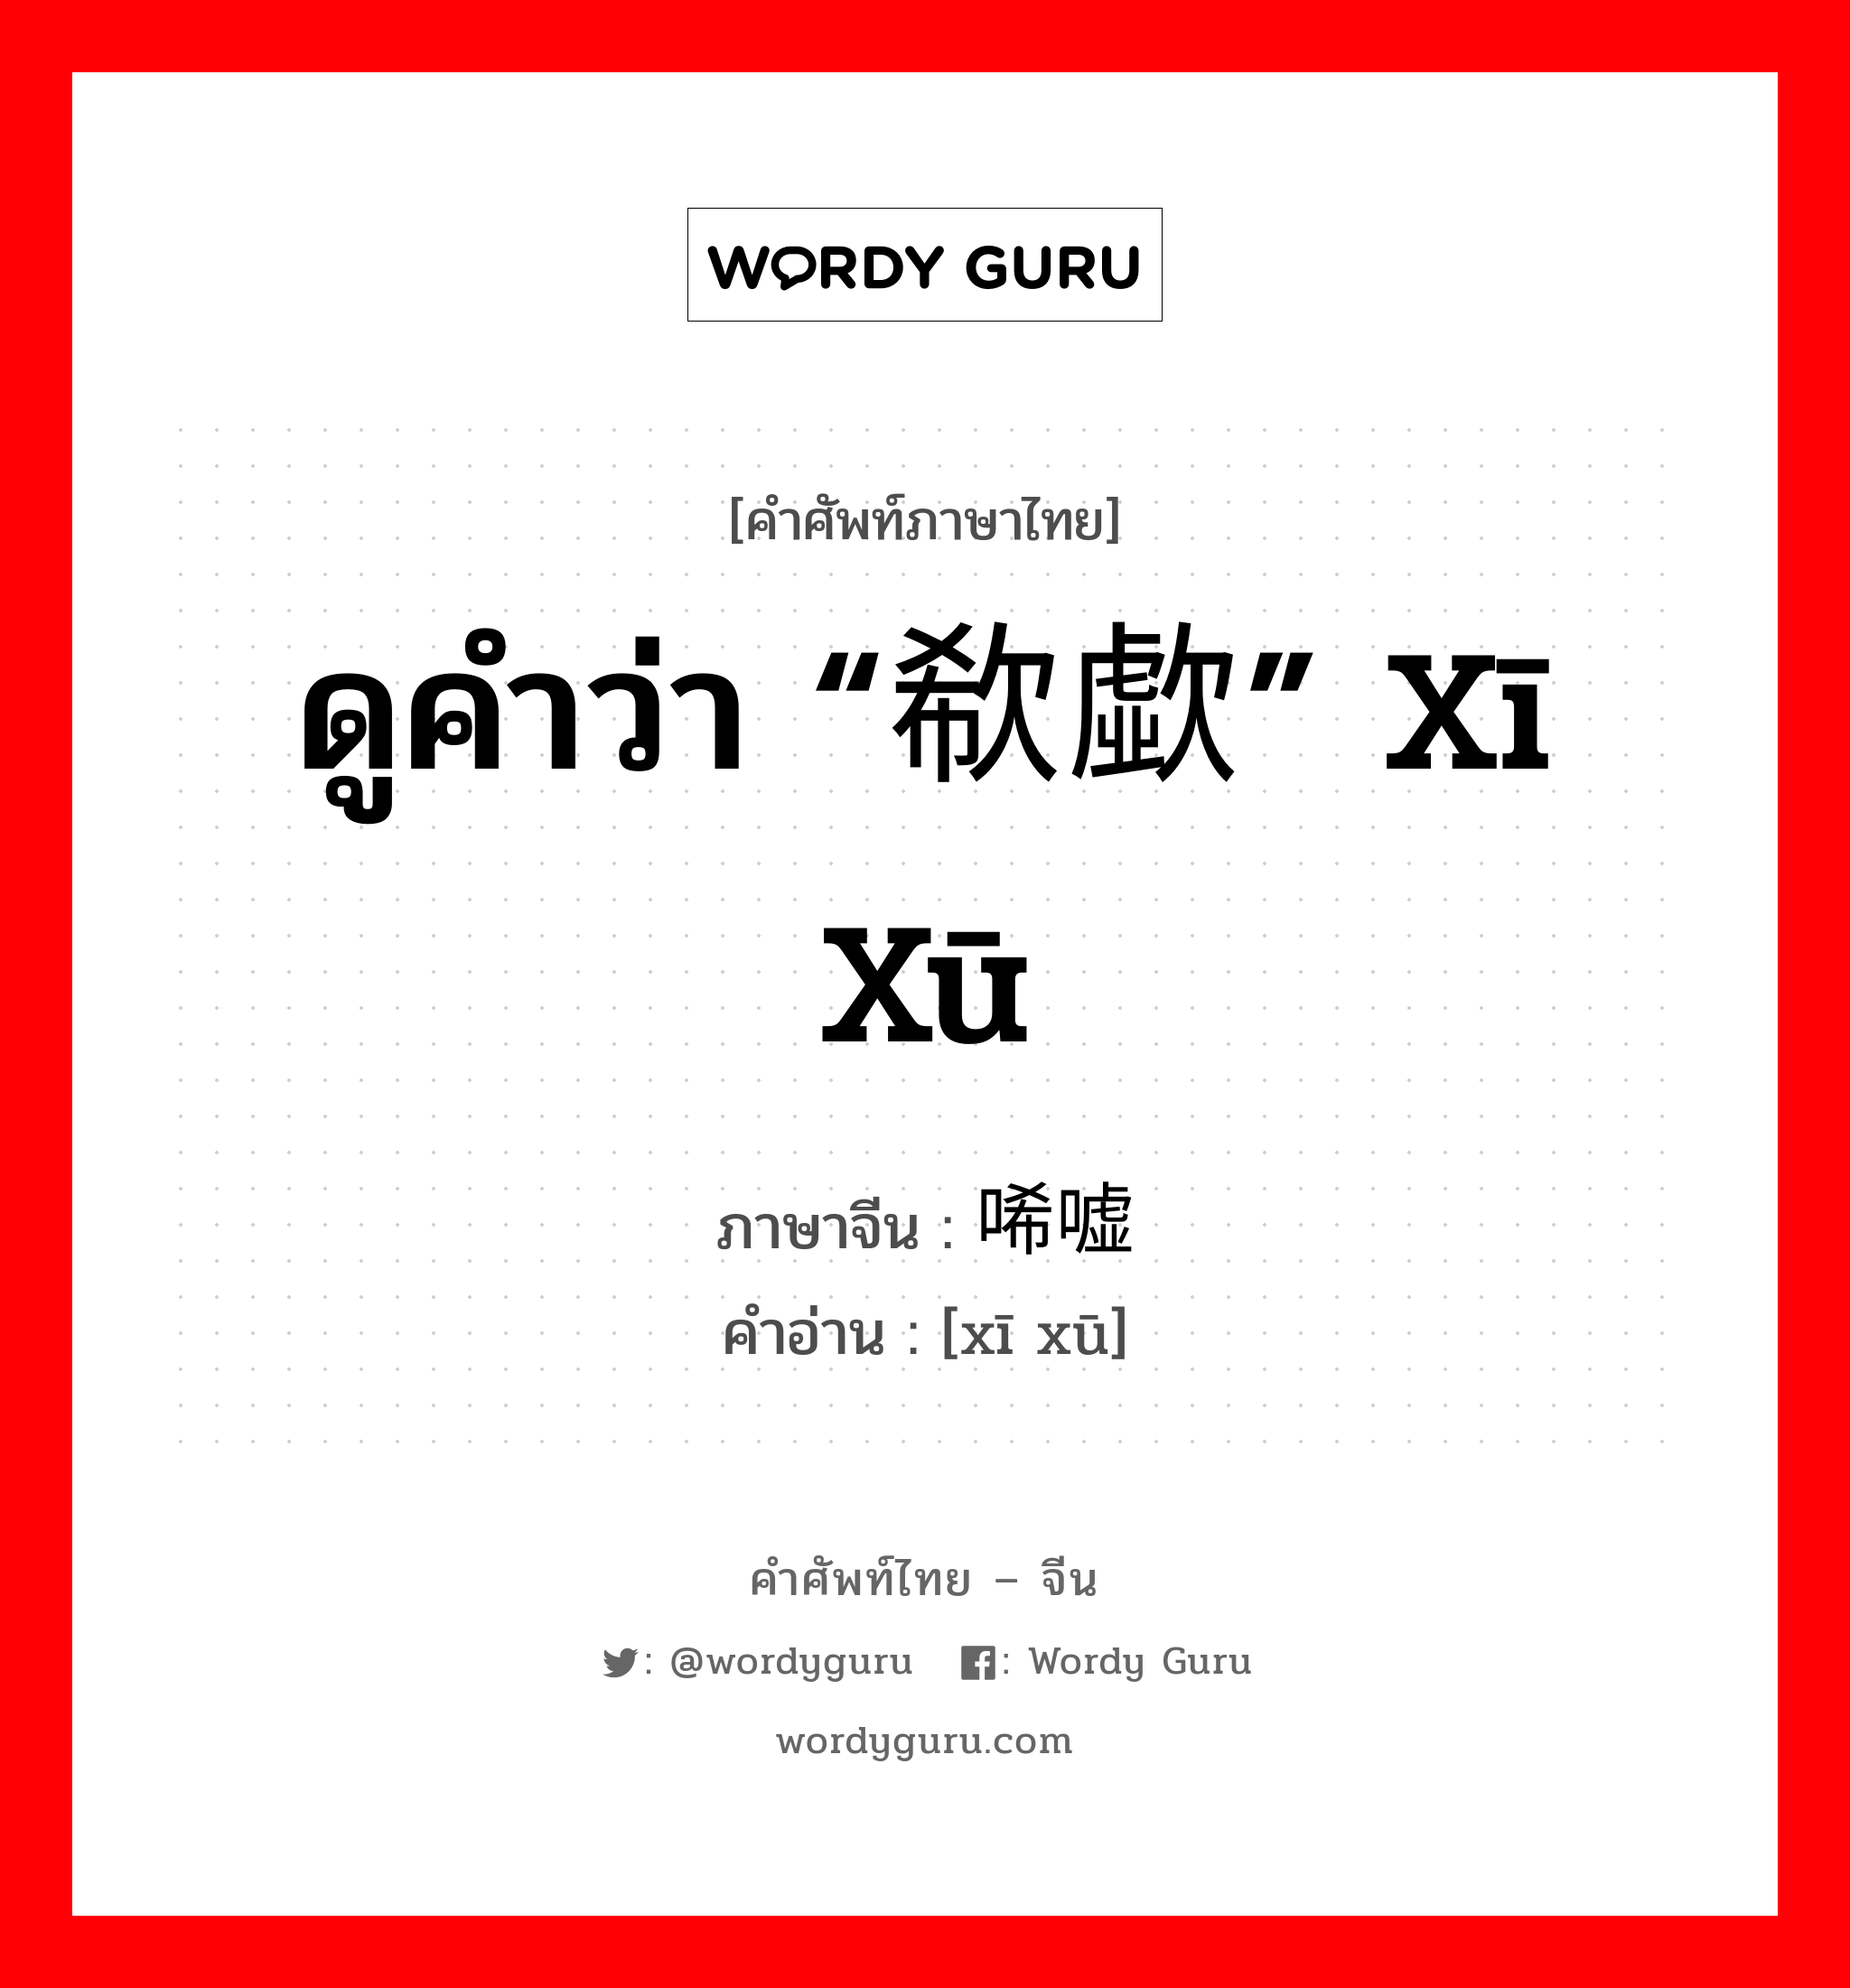 ดูคำว่า “欷歔” xī xū ภาษาจีนคืออะไร, คำศัพท์ภาษาไทย - จีน ดูคำว่า “欷歔” xī xū ภาษาจีน 唏嘘 คำอ่าน [xī xū]